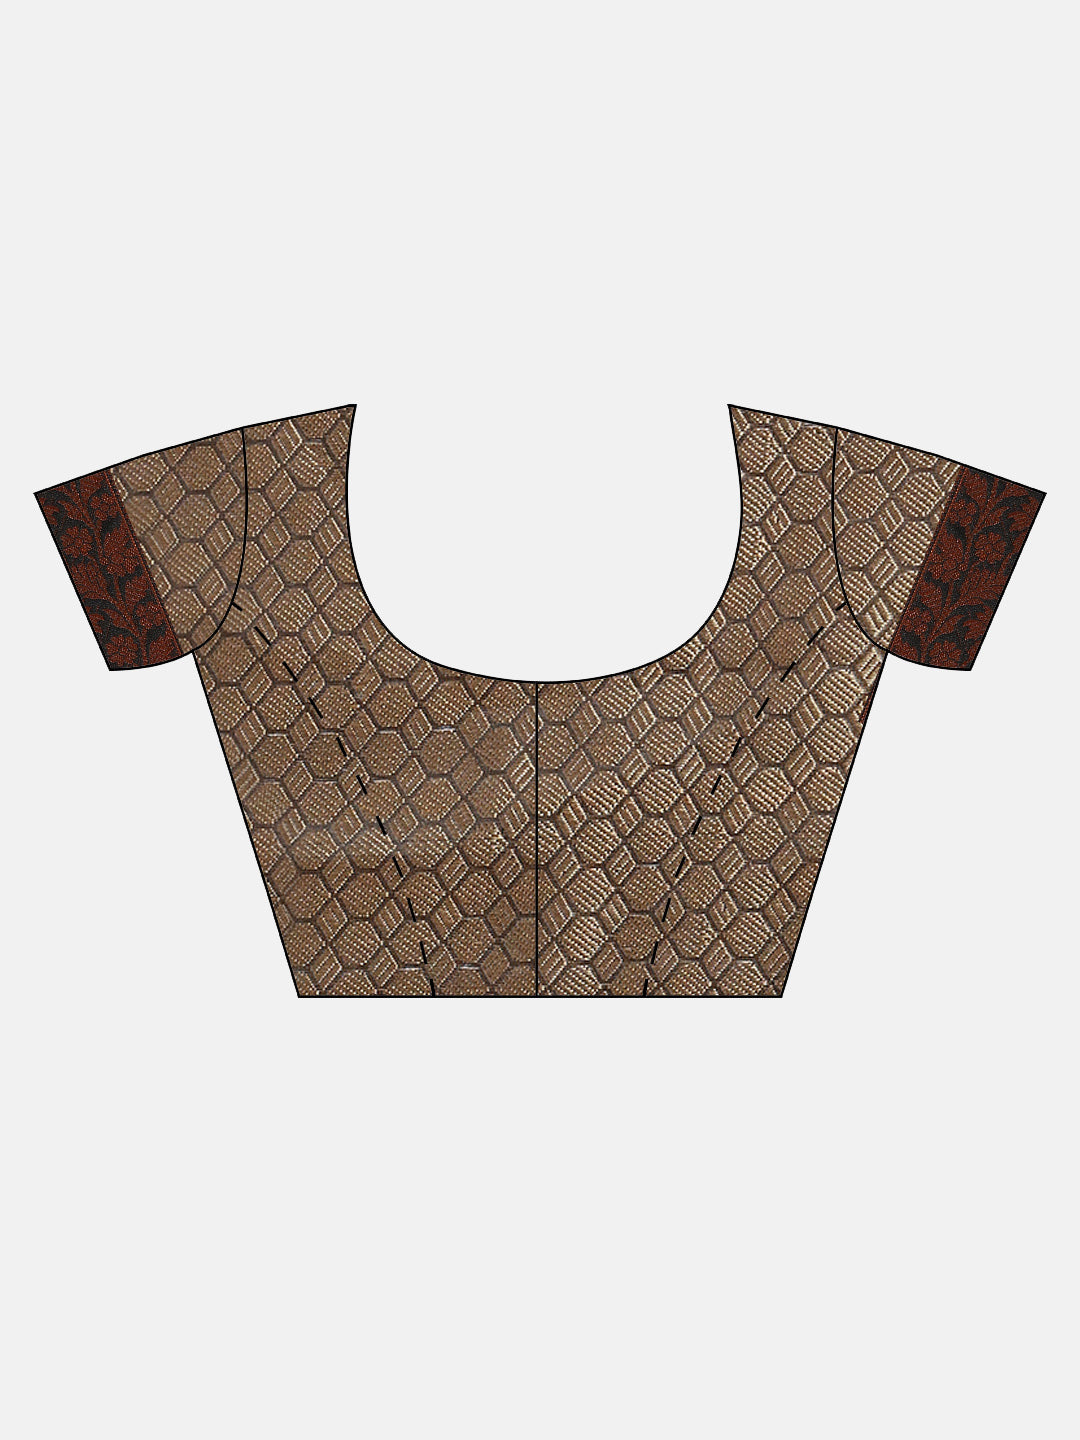 Semi Kora Cotton Allover Design Saree Black with Copper Zari Border SKC04-Blouse view